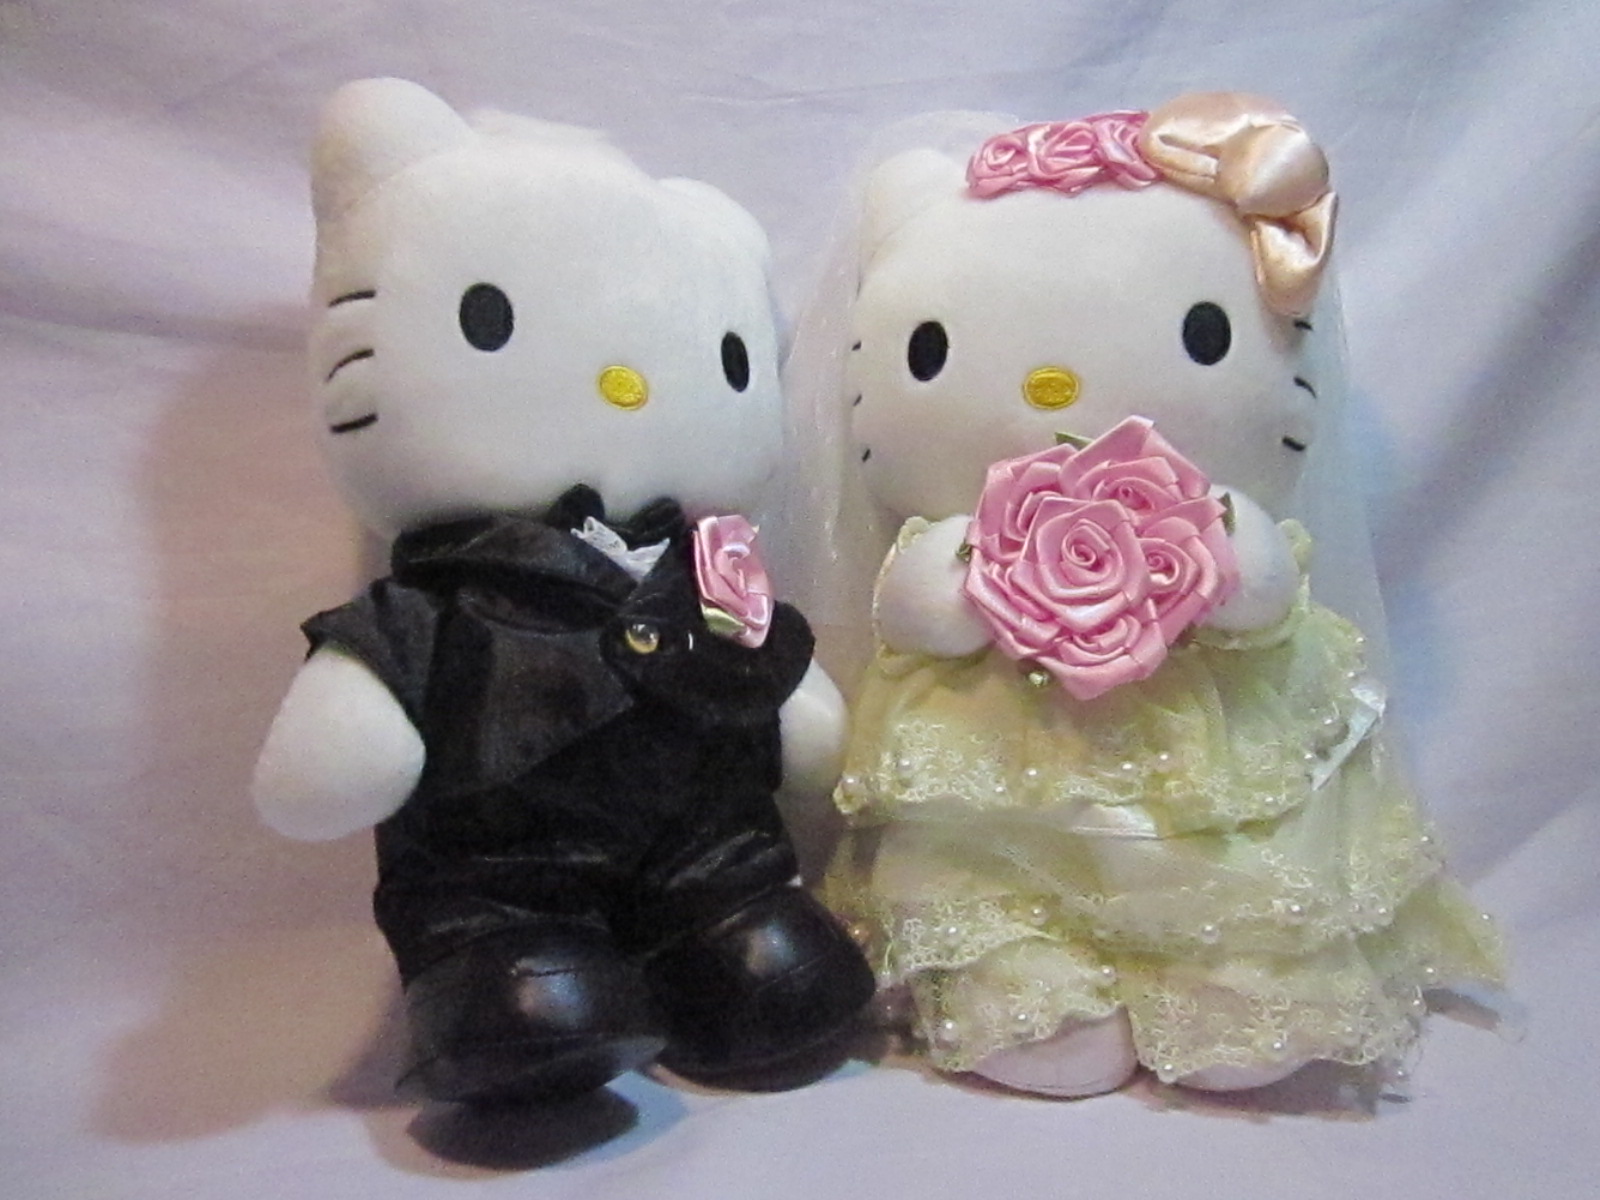  Boneka  Wedding Hello  Kitty  tokohellokittyjakarta